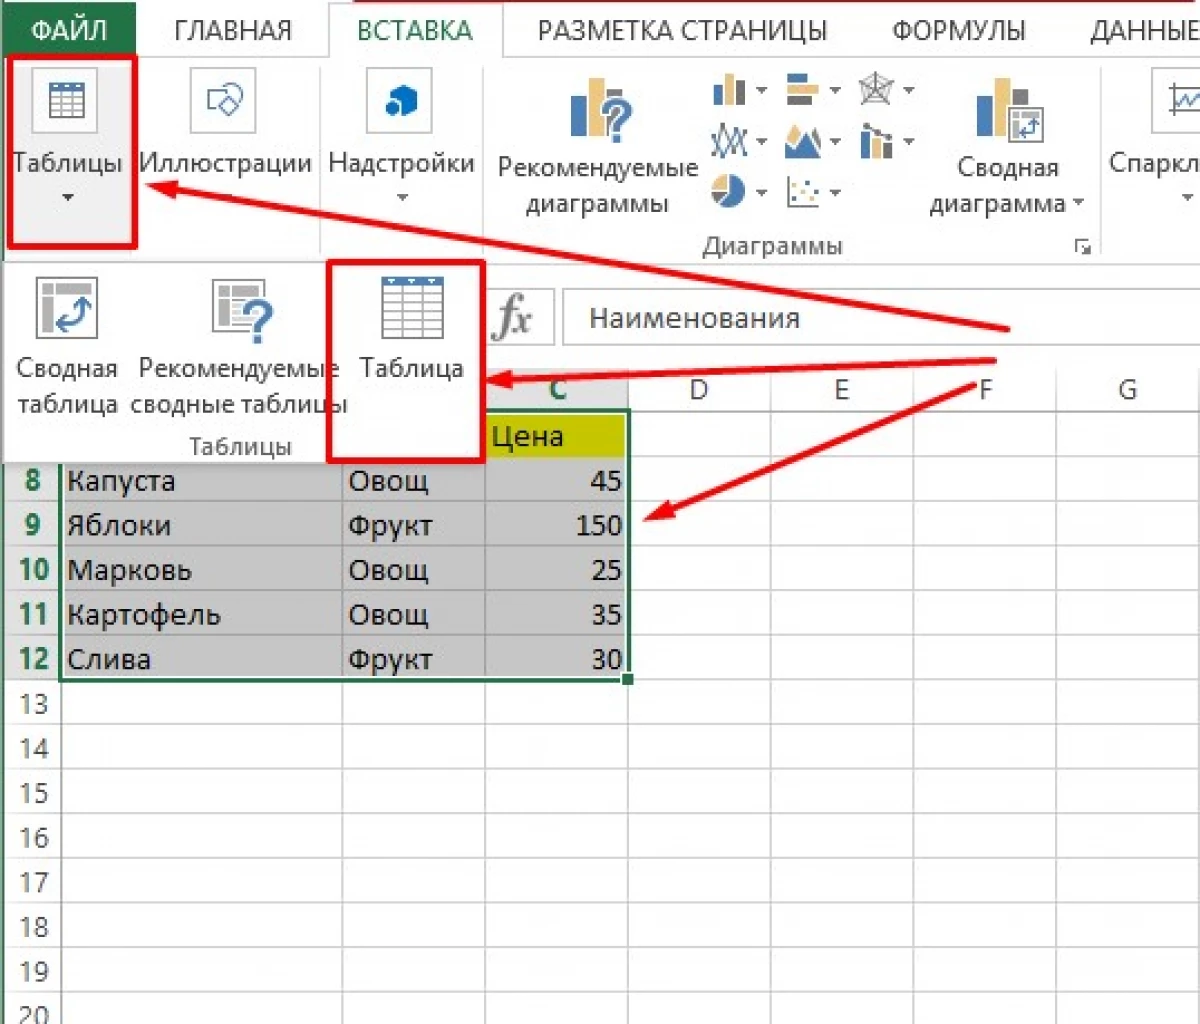 Excel માં ફિલ્ટર કેવી રીતે દૂર કરવું 15035_3